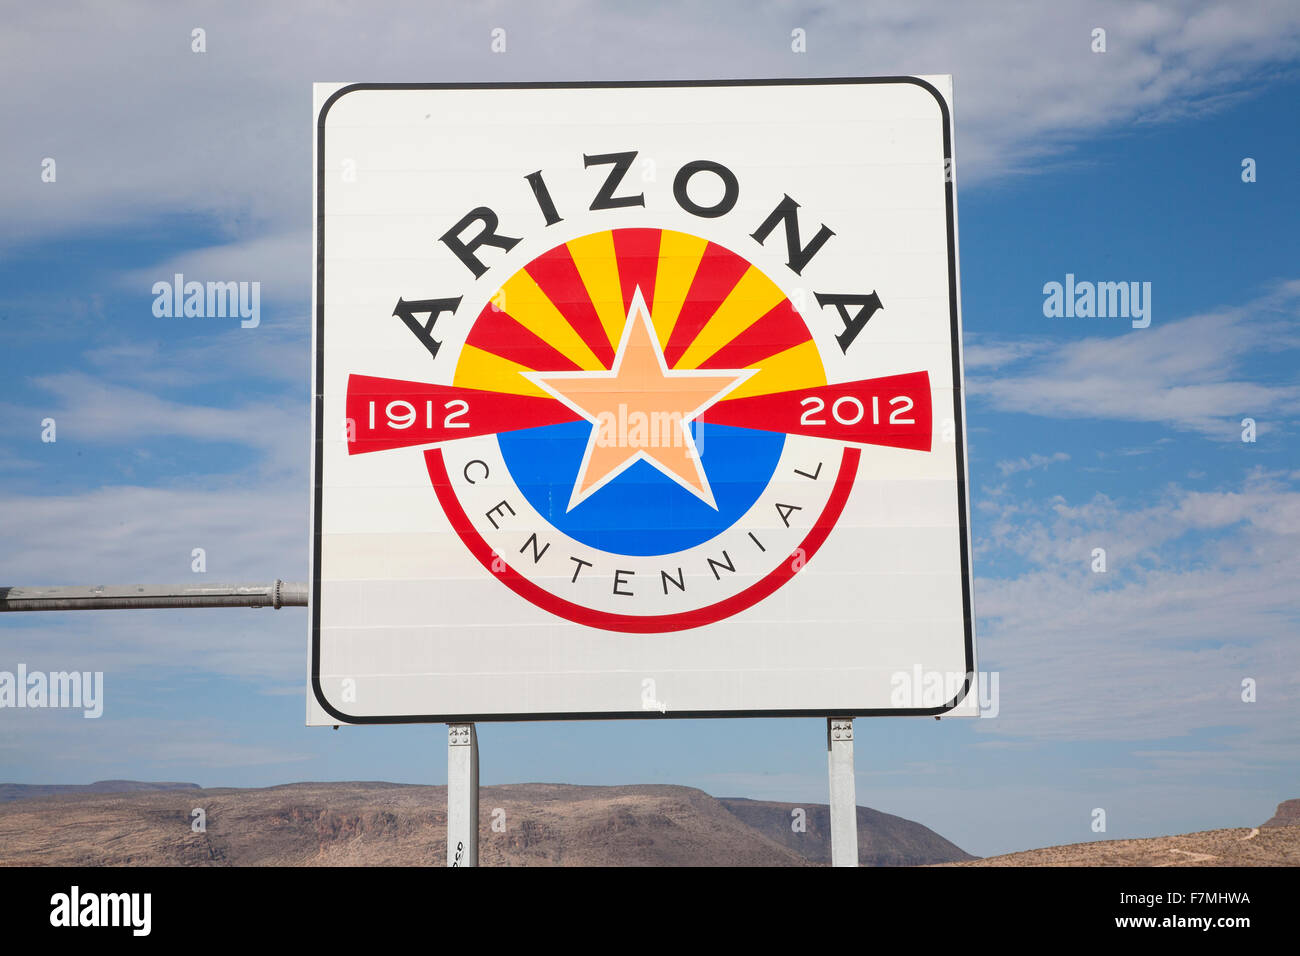 Bienvenidos a Arizona señales de carretera Foto de stock